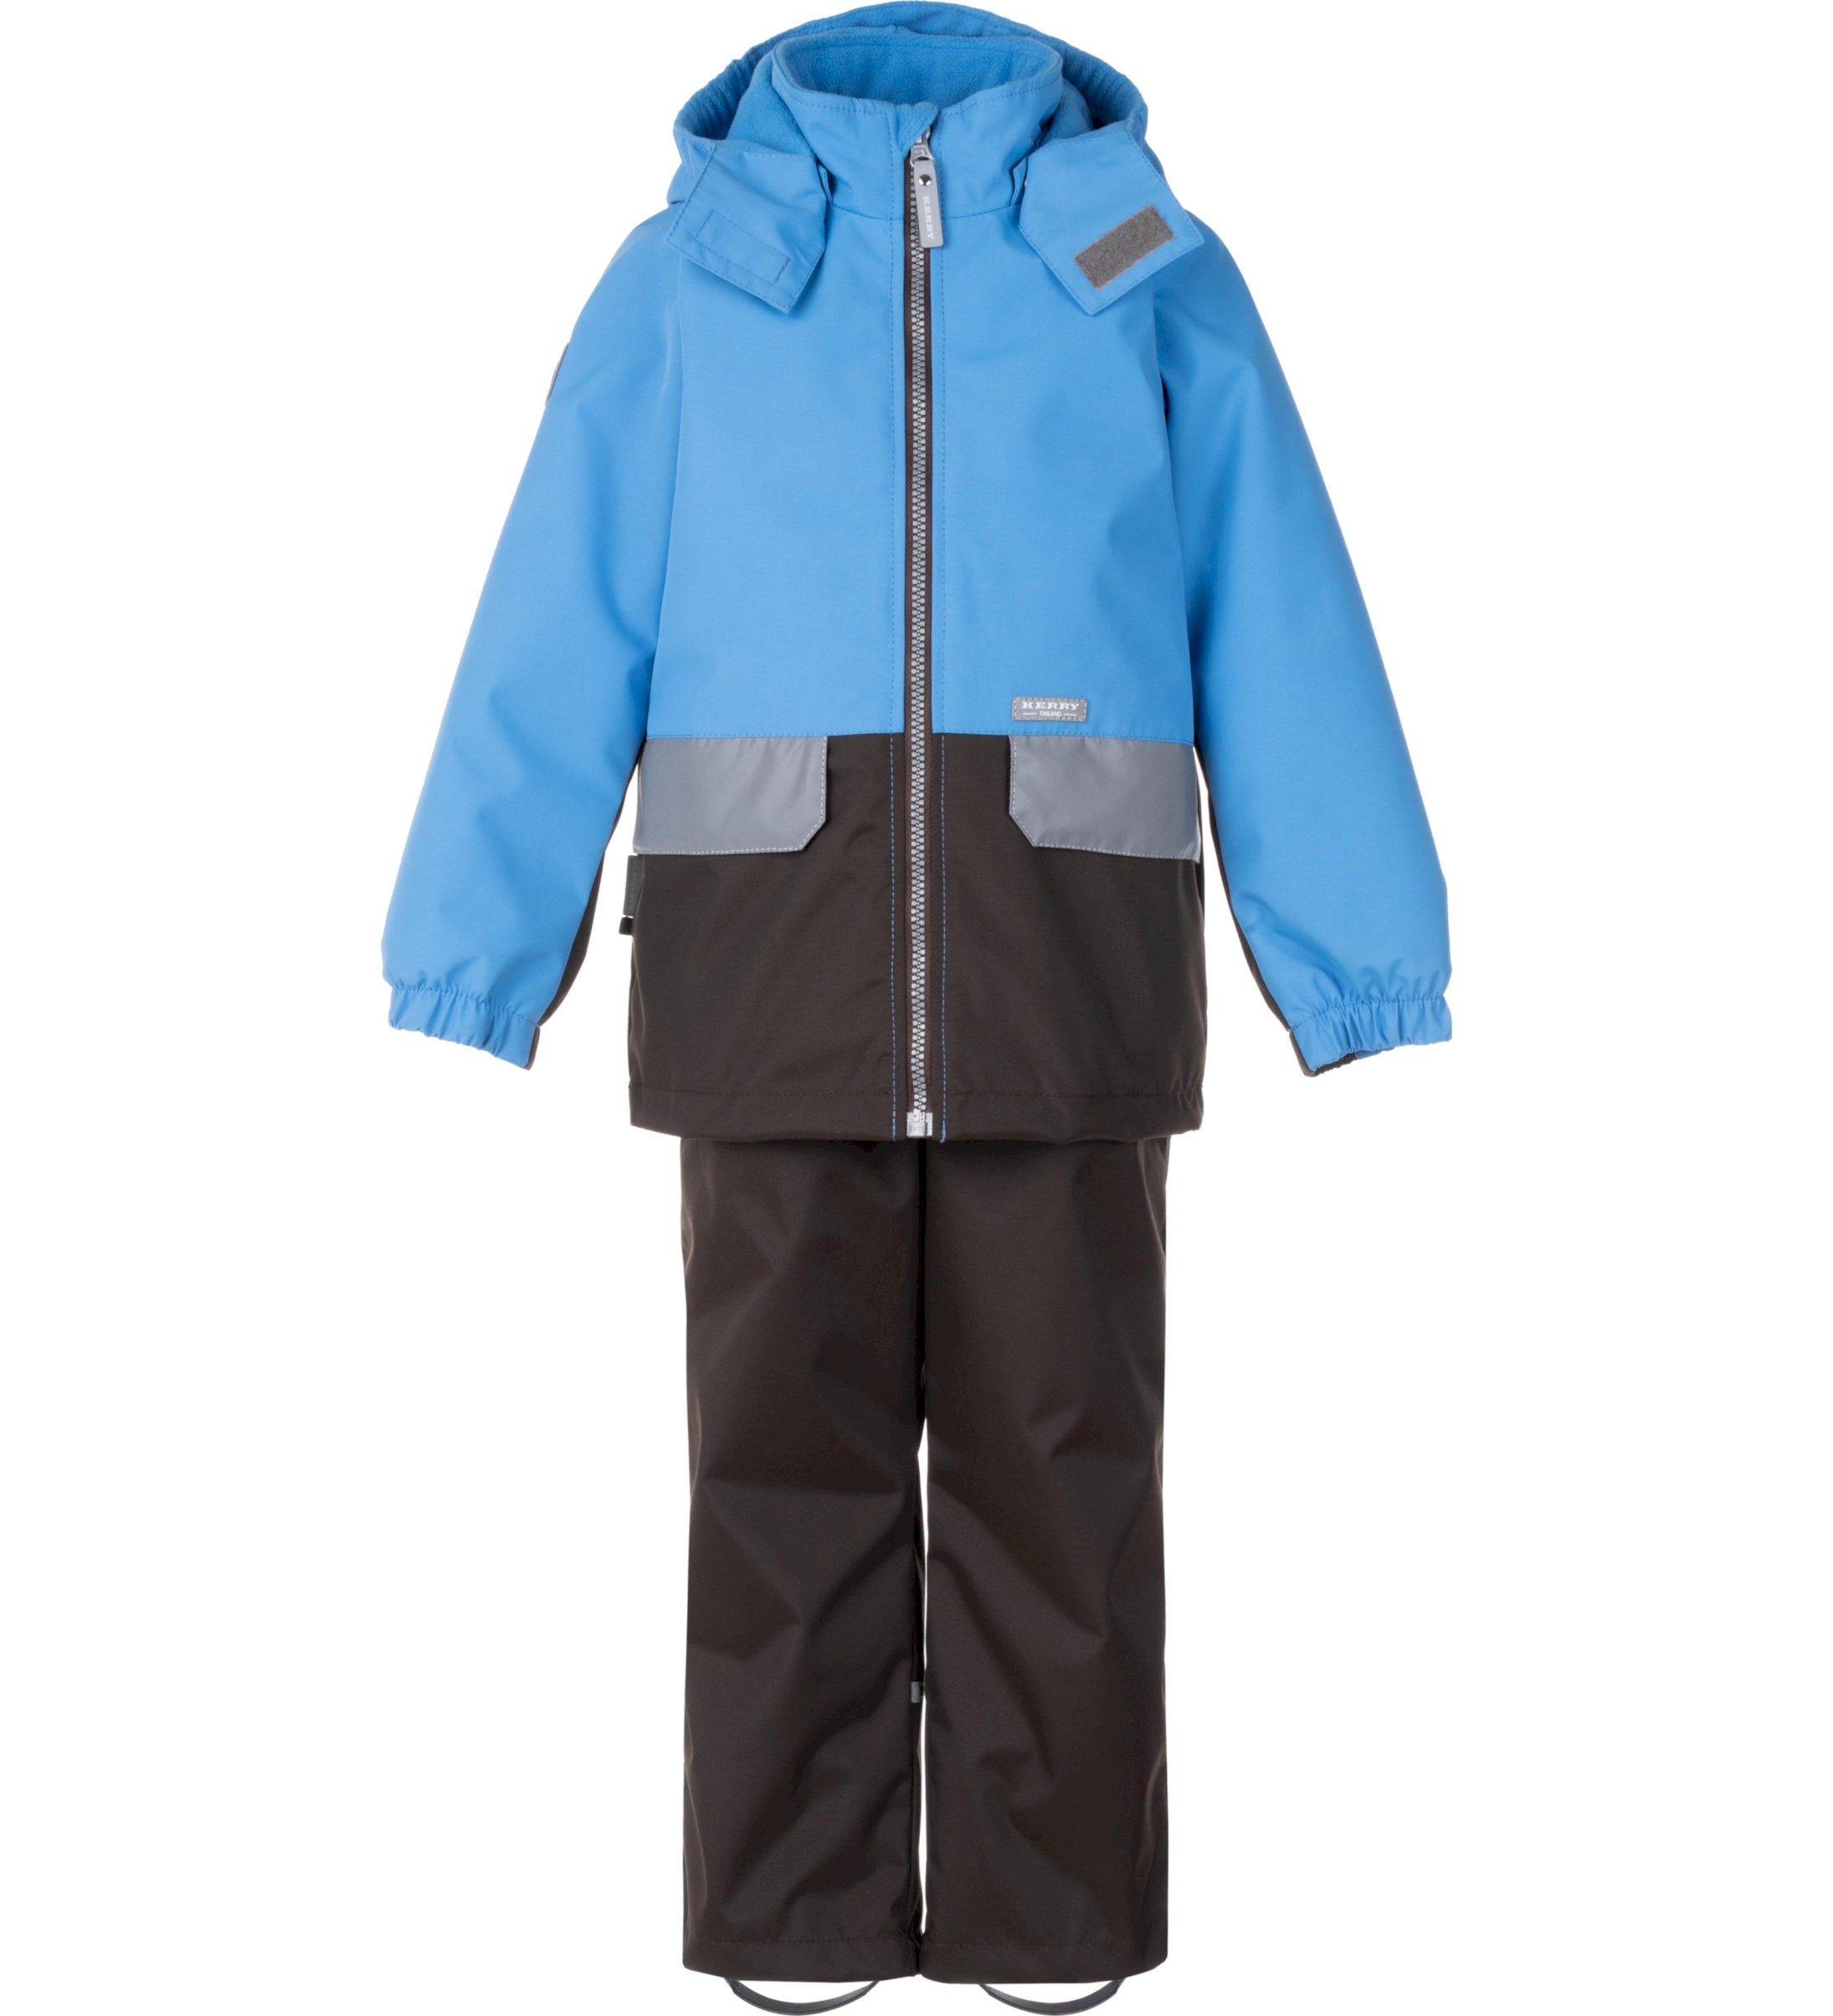 Комплект верхней одежды детский KERRY K24020, голубой; серый, 134 пылесос bort bac 500 22 900 вт сухая влажная уборка 22 л серый